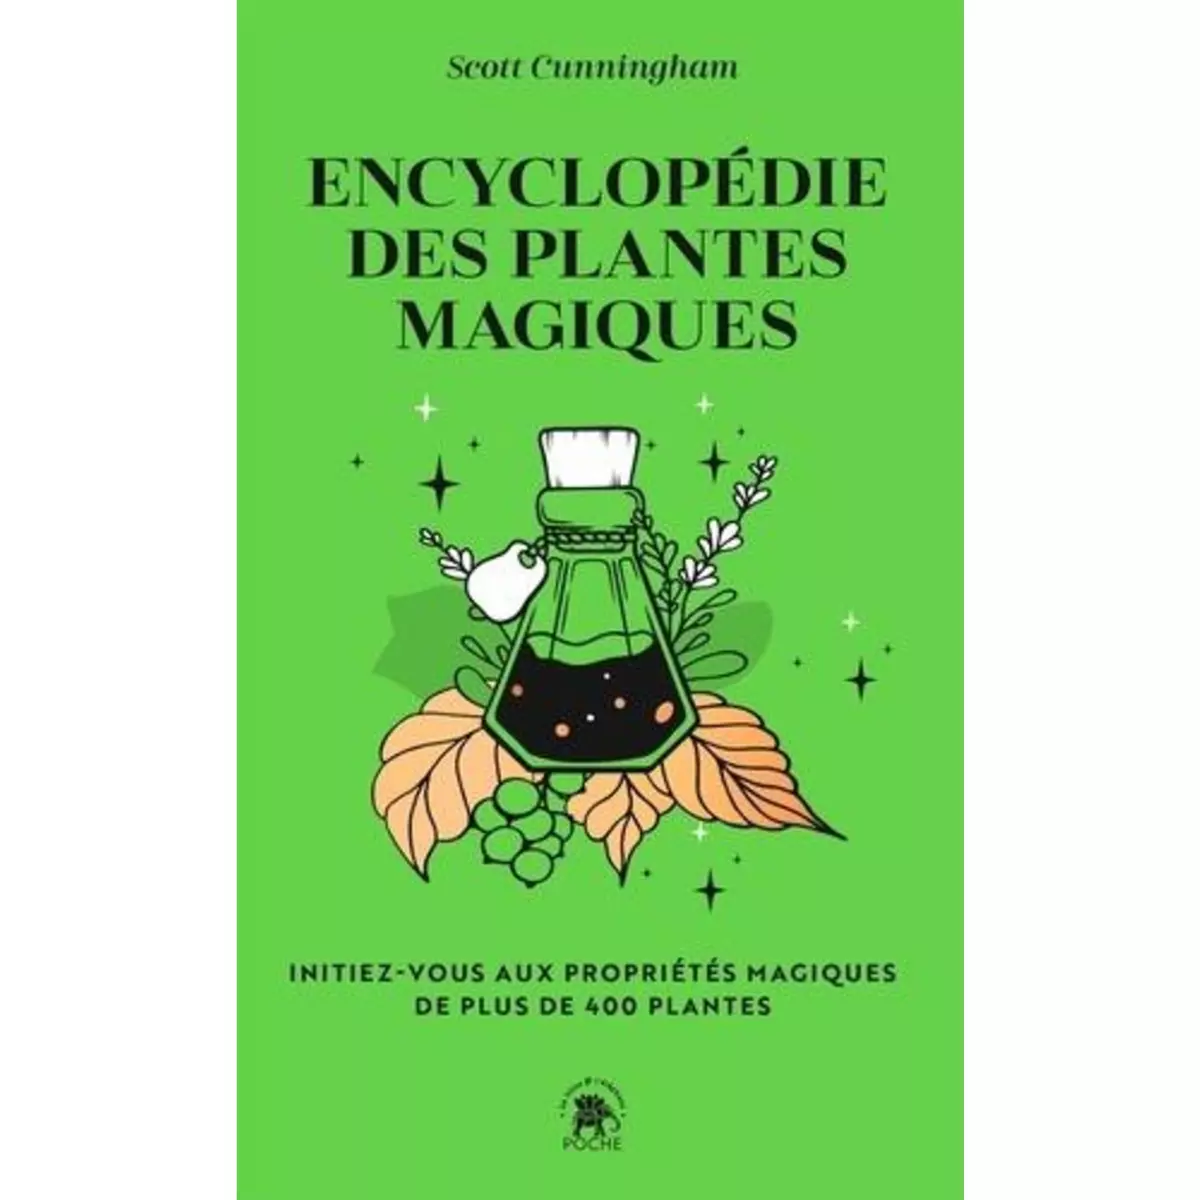  ENCYCLOPEDIE DES PLANTES MAGIQUES. INITIEZ-VOUS AUX PROPRIETES MAGIQUES DE 400 PLANTES, Cunningham Scott